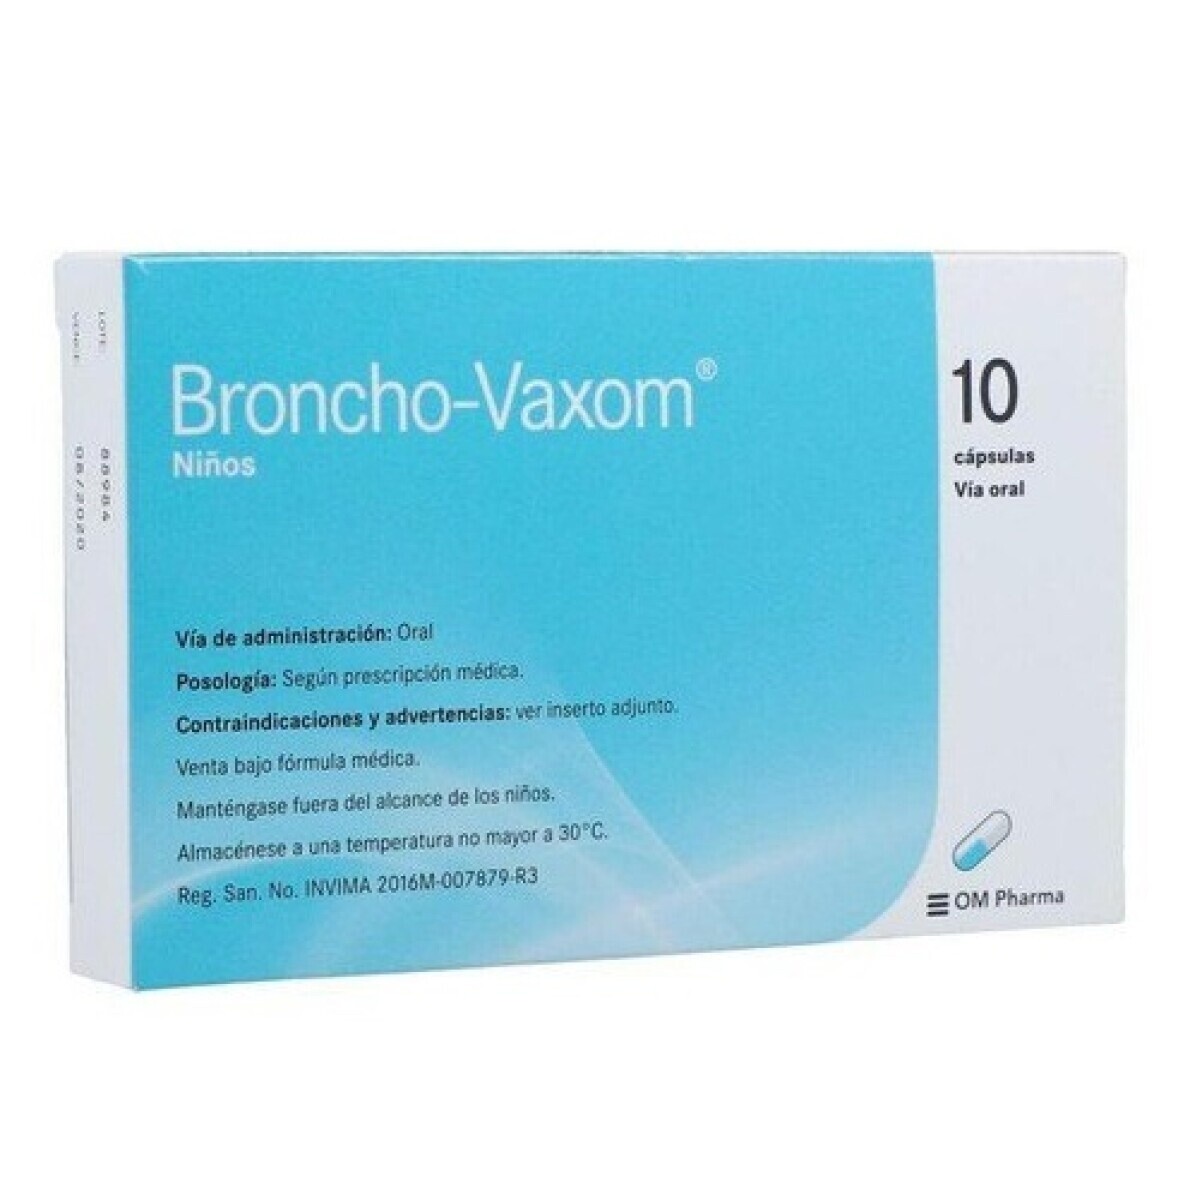 Broncho-Vaxom NiÒos x 10 CAP 